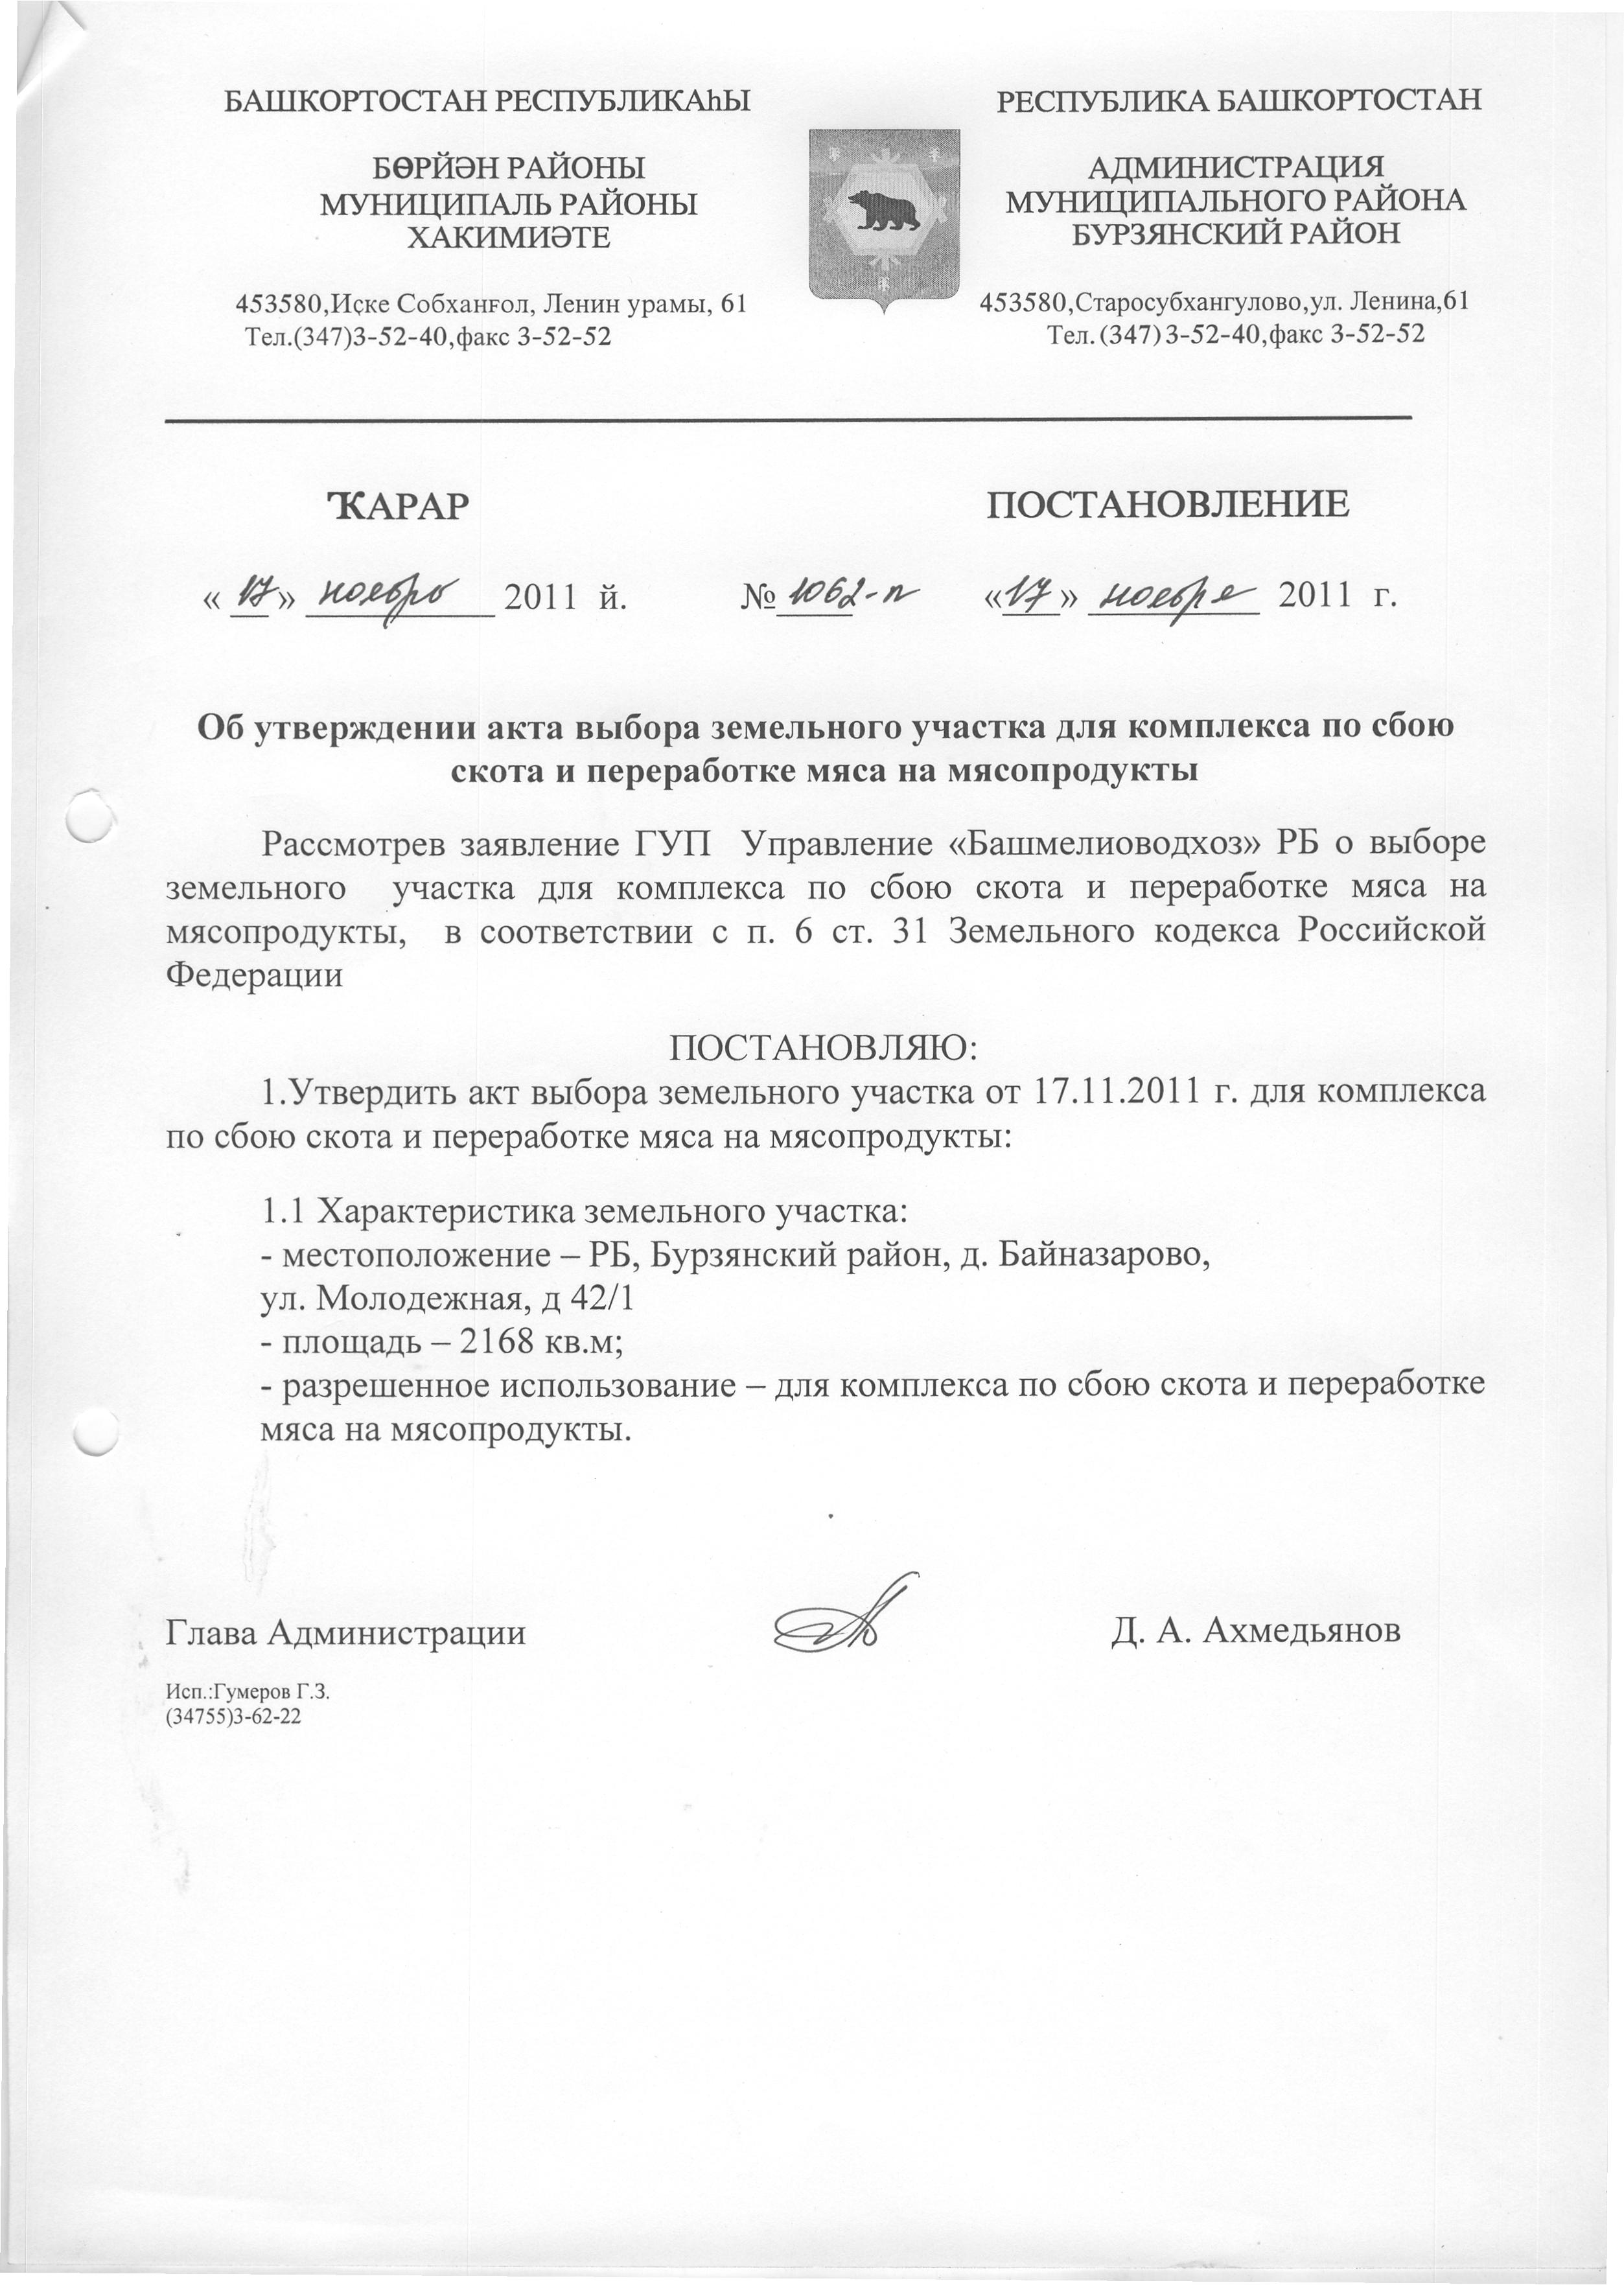 Должностная инструкция работников администрации сельского поселения в республике башкортостан